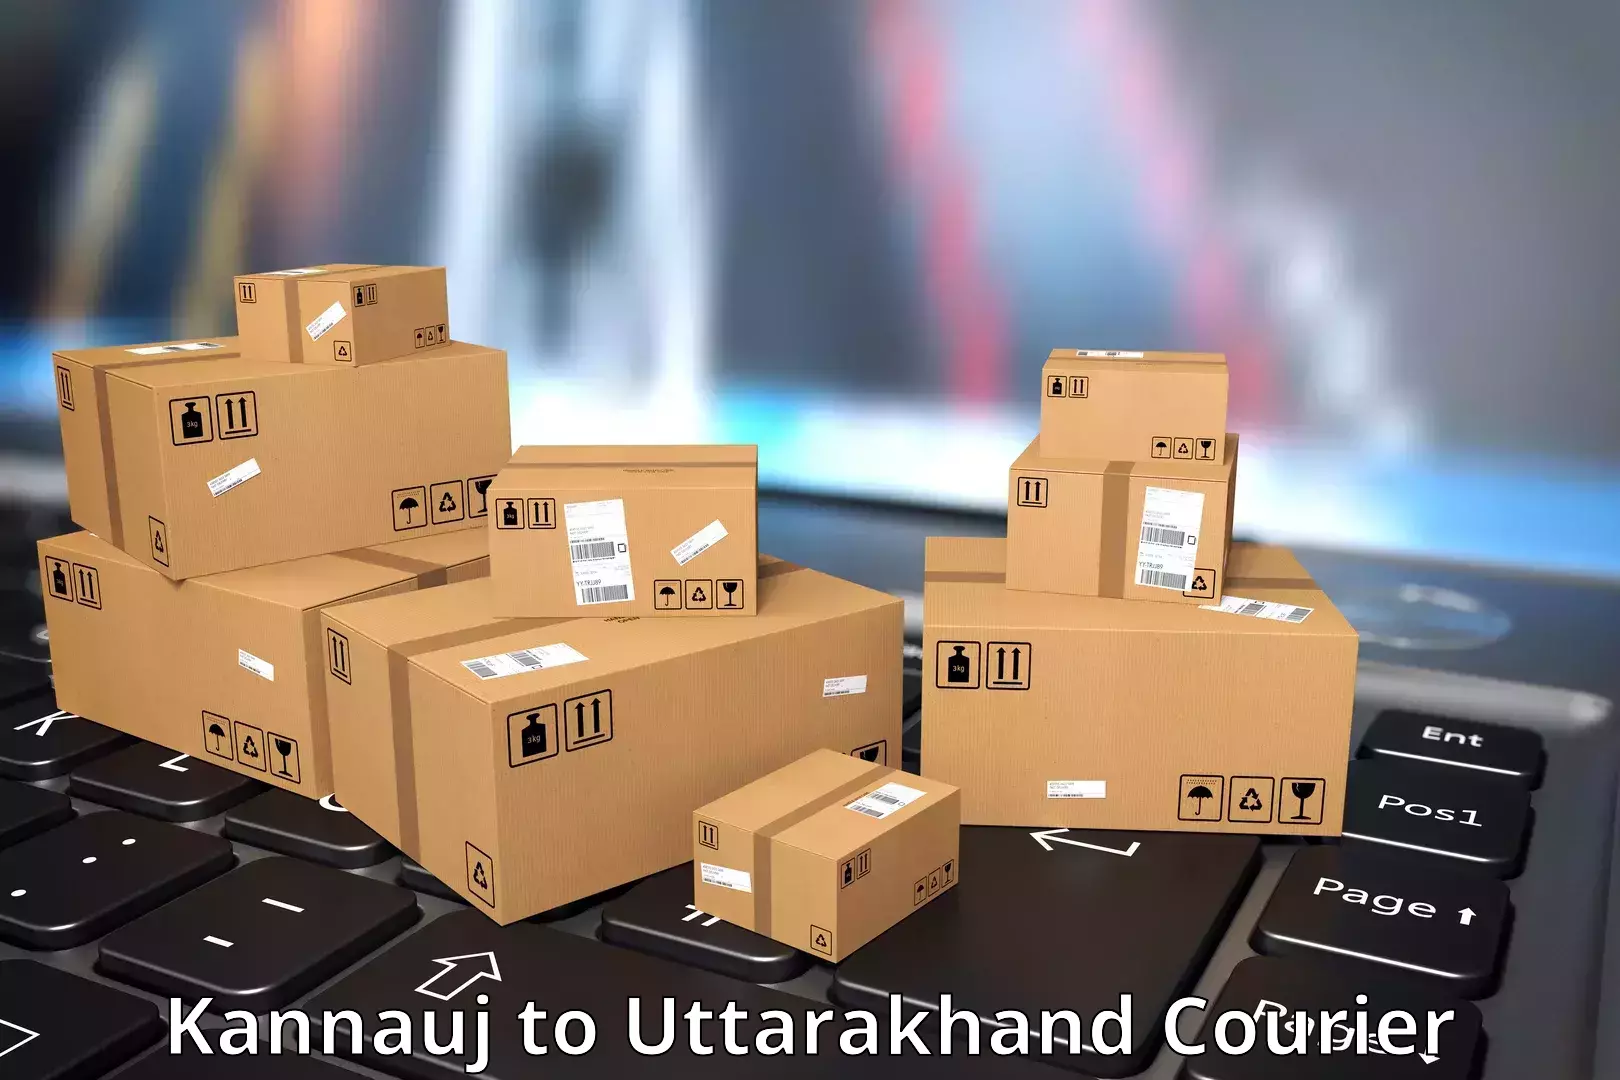 Courier app Kannauj to Pithoragarh